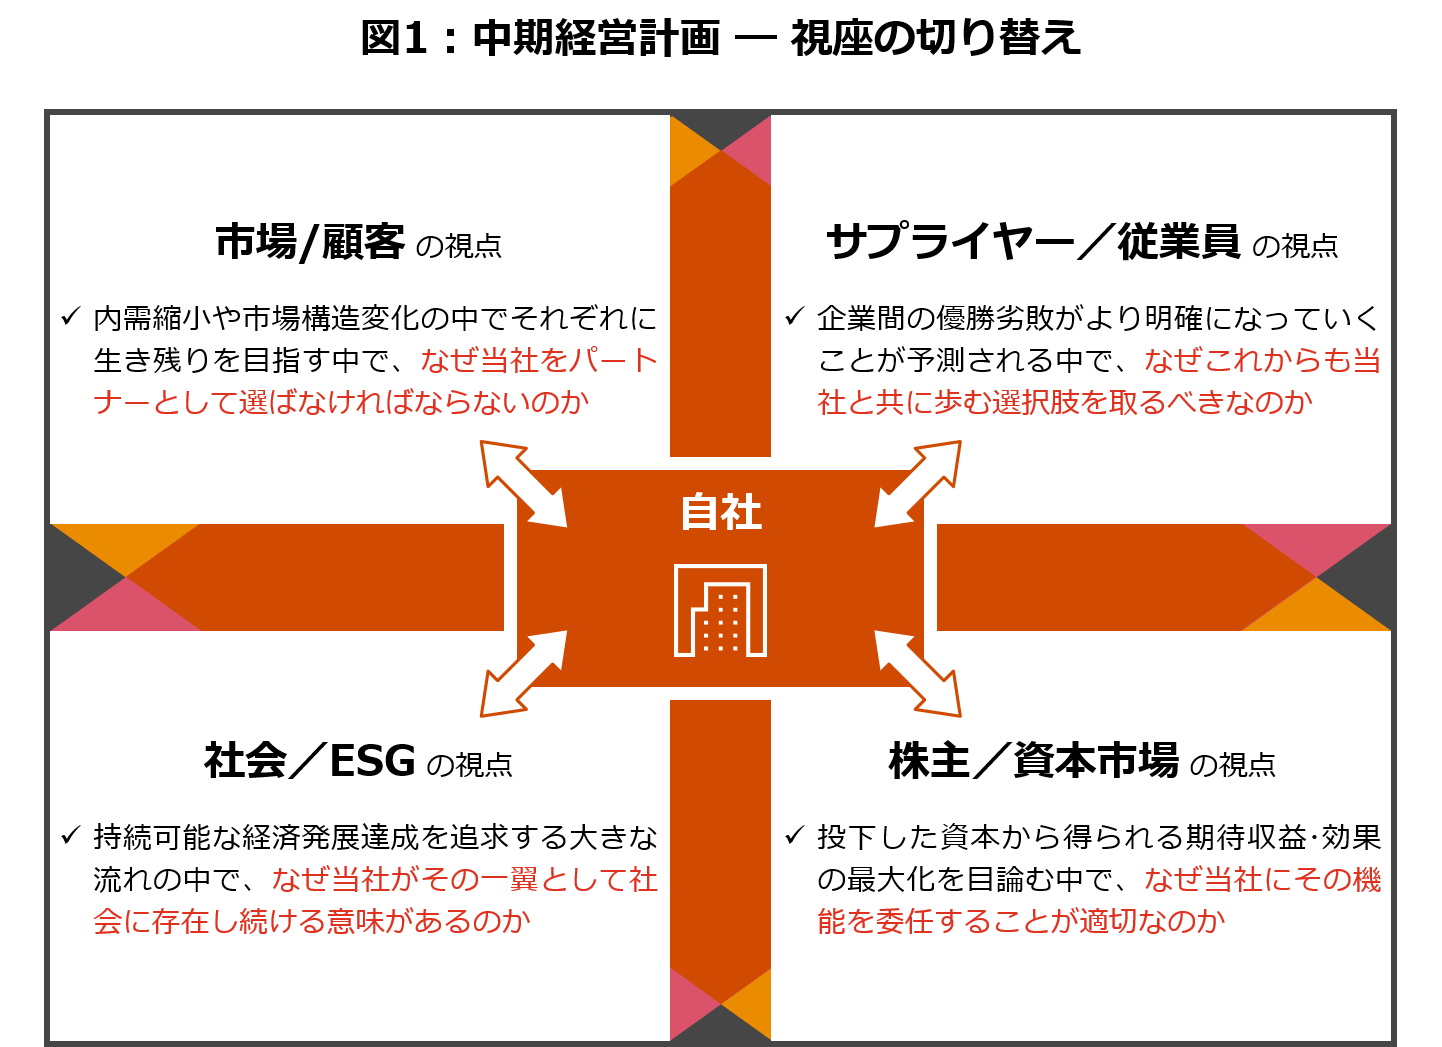 企業価値向上のための経営戦略 Pwc Japanグループ